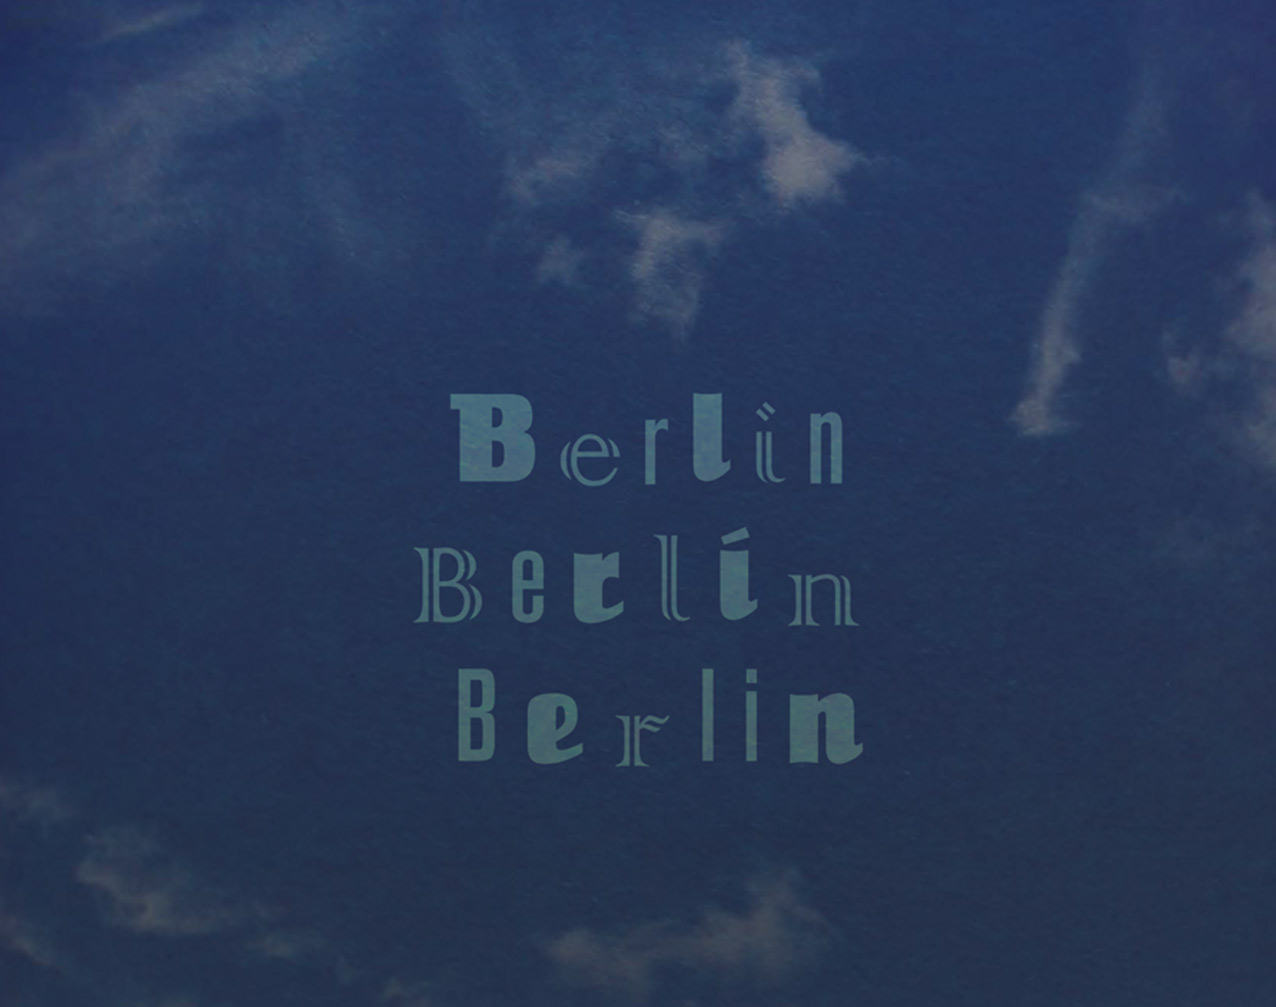 Berlin Berlin Berlin: 3 visions 1 city Exhibition